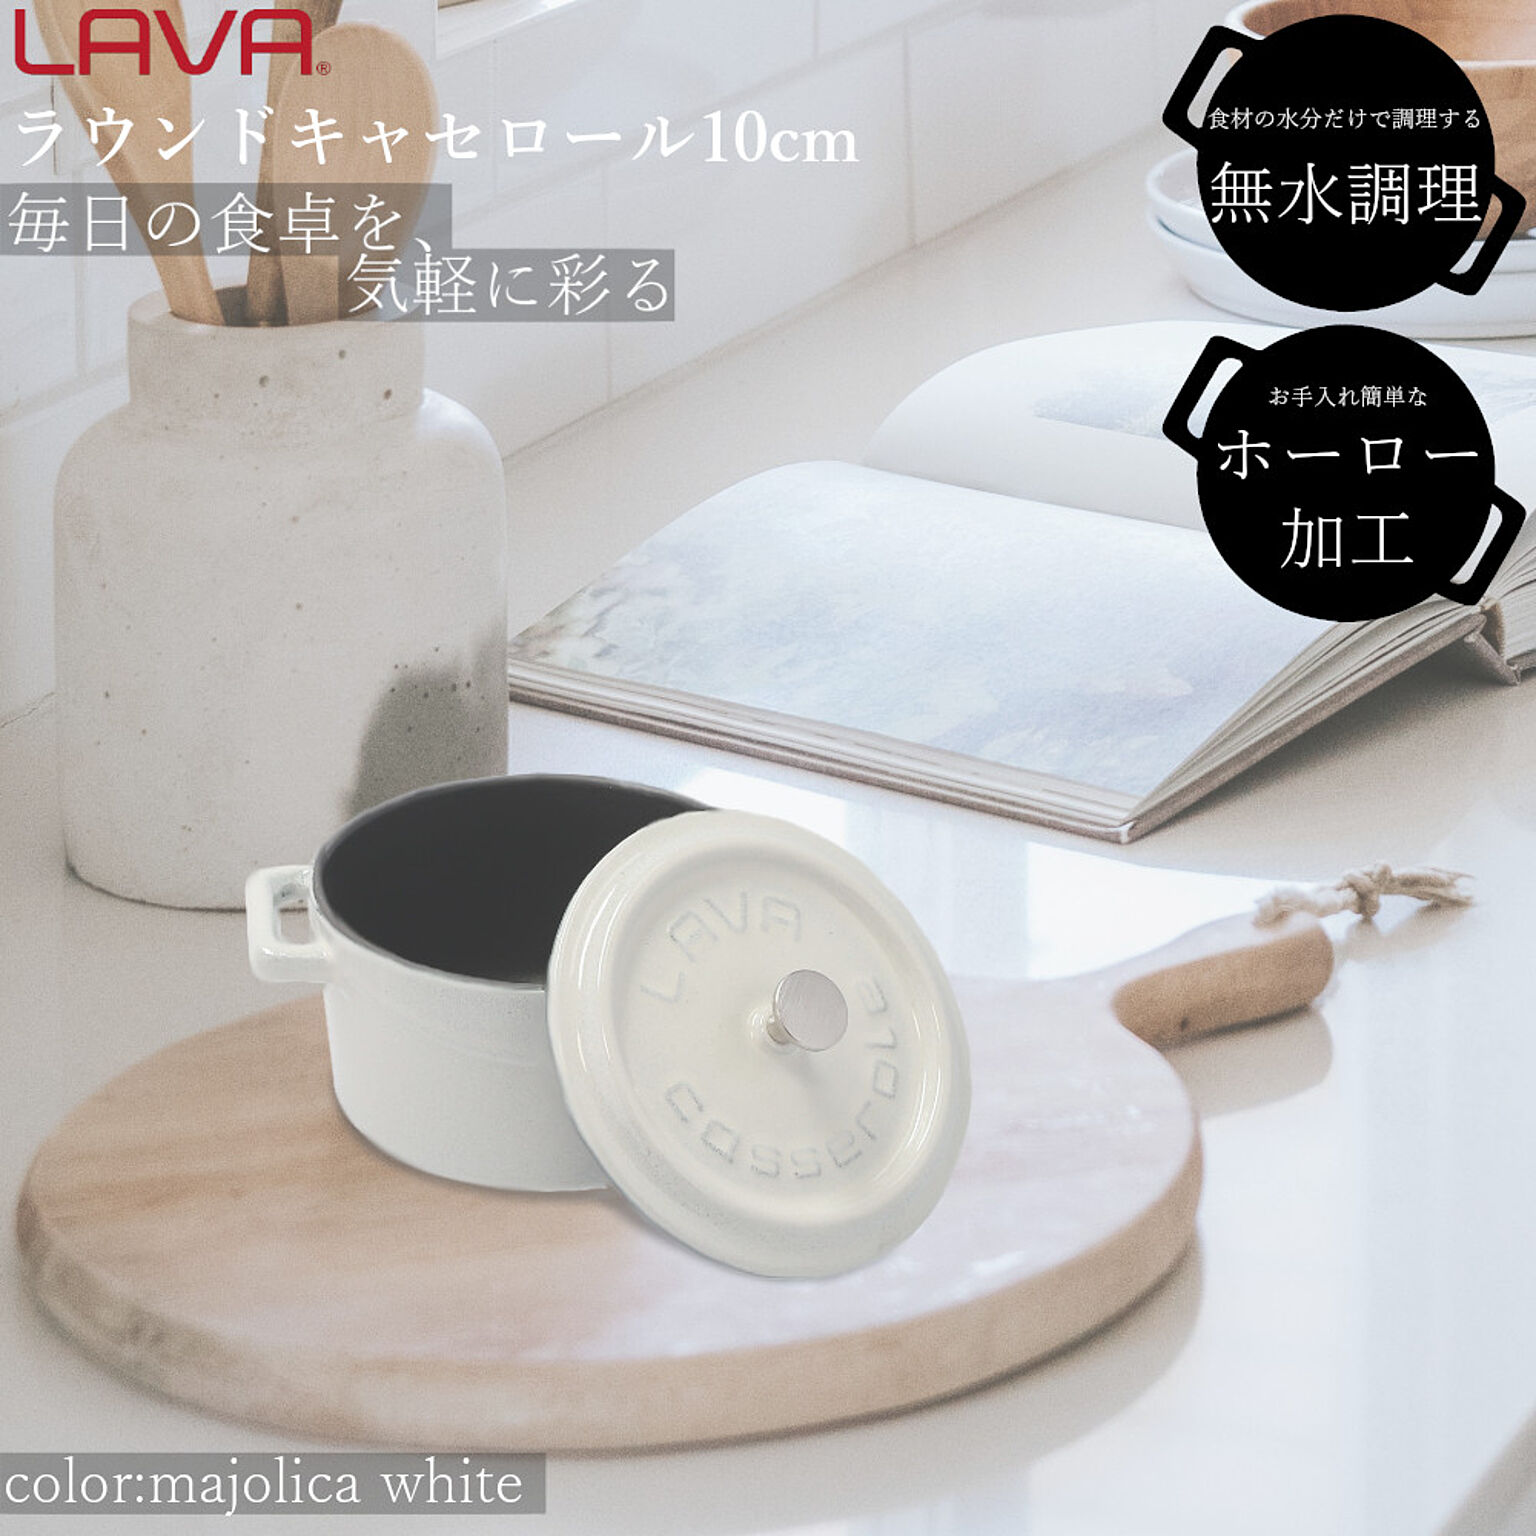 LAVA 鋳物 ホーロー 鍋 ラウンドキャセロール 10cm ラバ ラヴァ トルコ